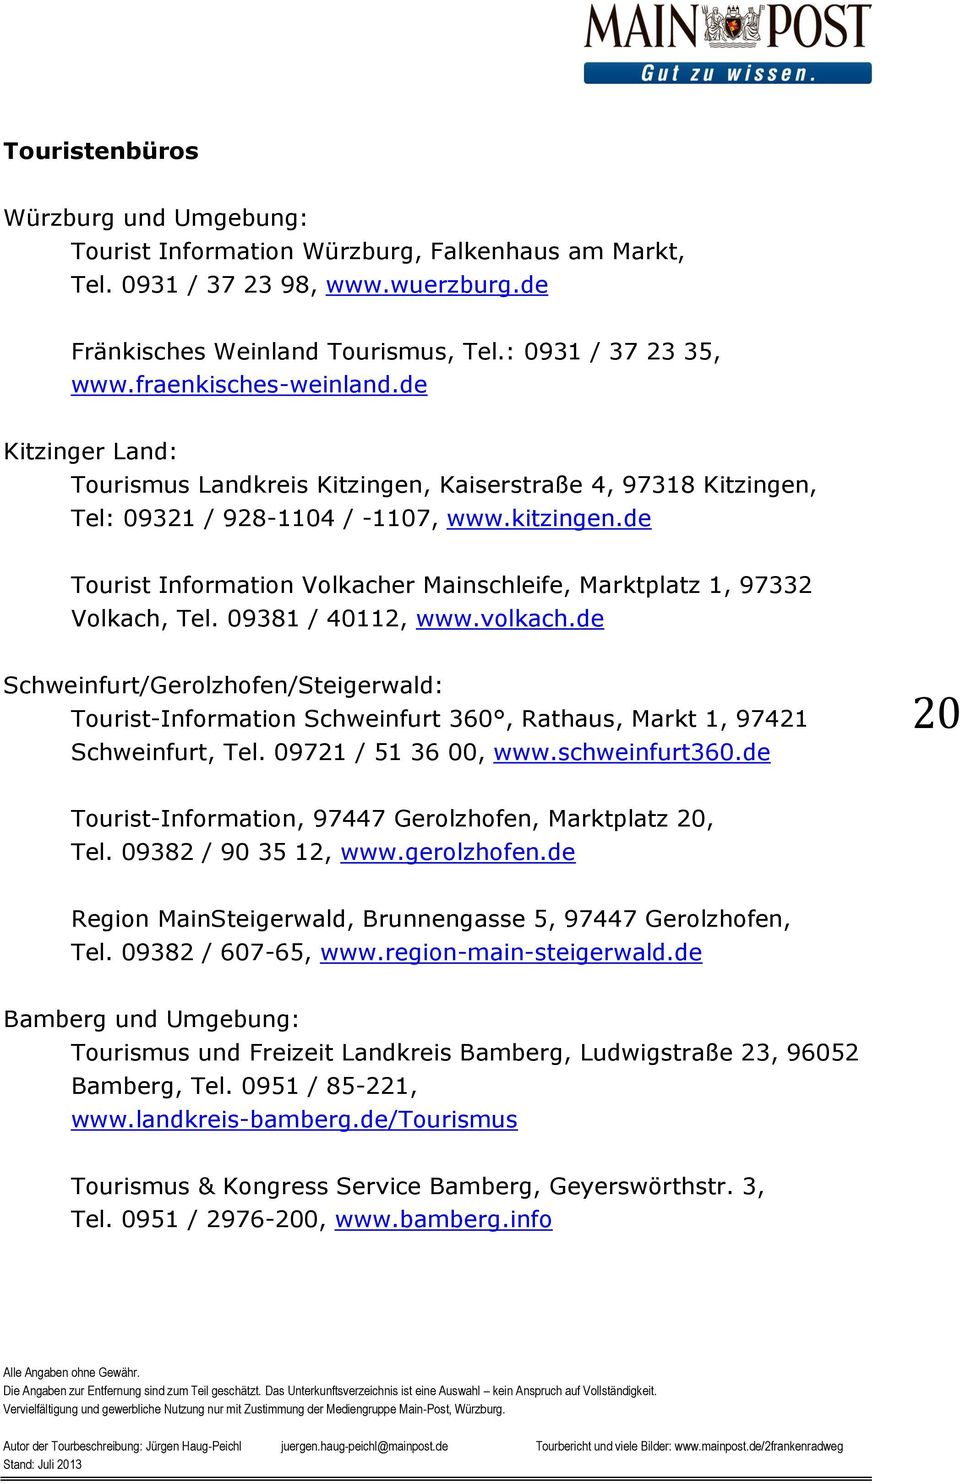 de Tourist Information Volkacher Mainschleife, Marktplatz 1, 97332 Volkach, Tel. 09381 / 40112, www.volkach.